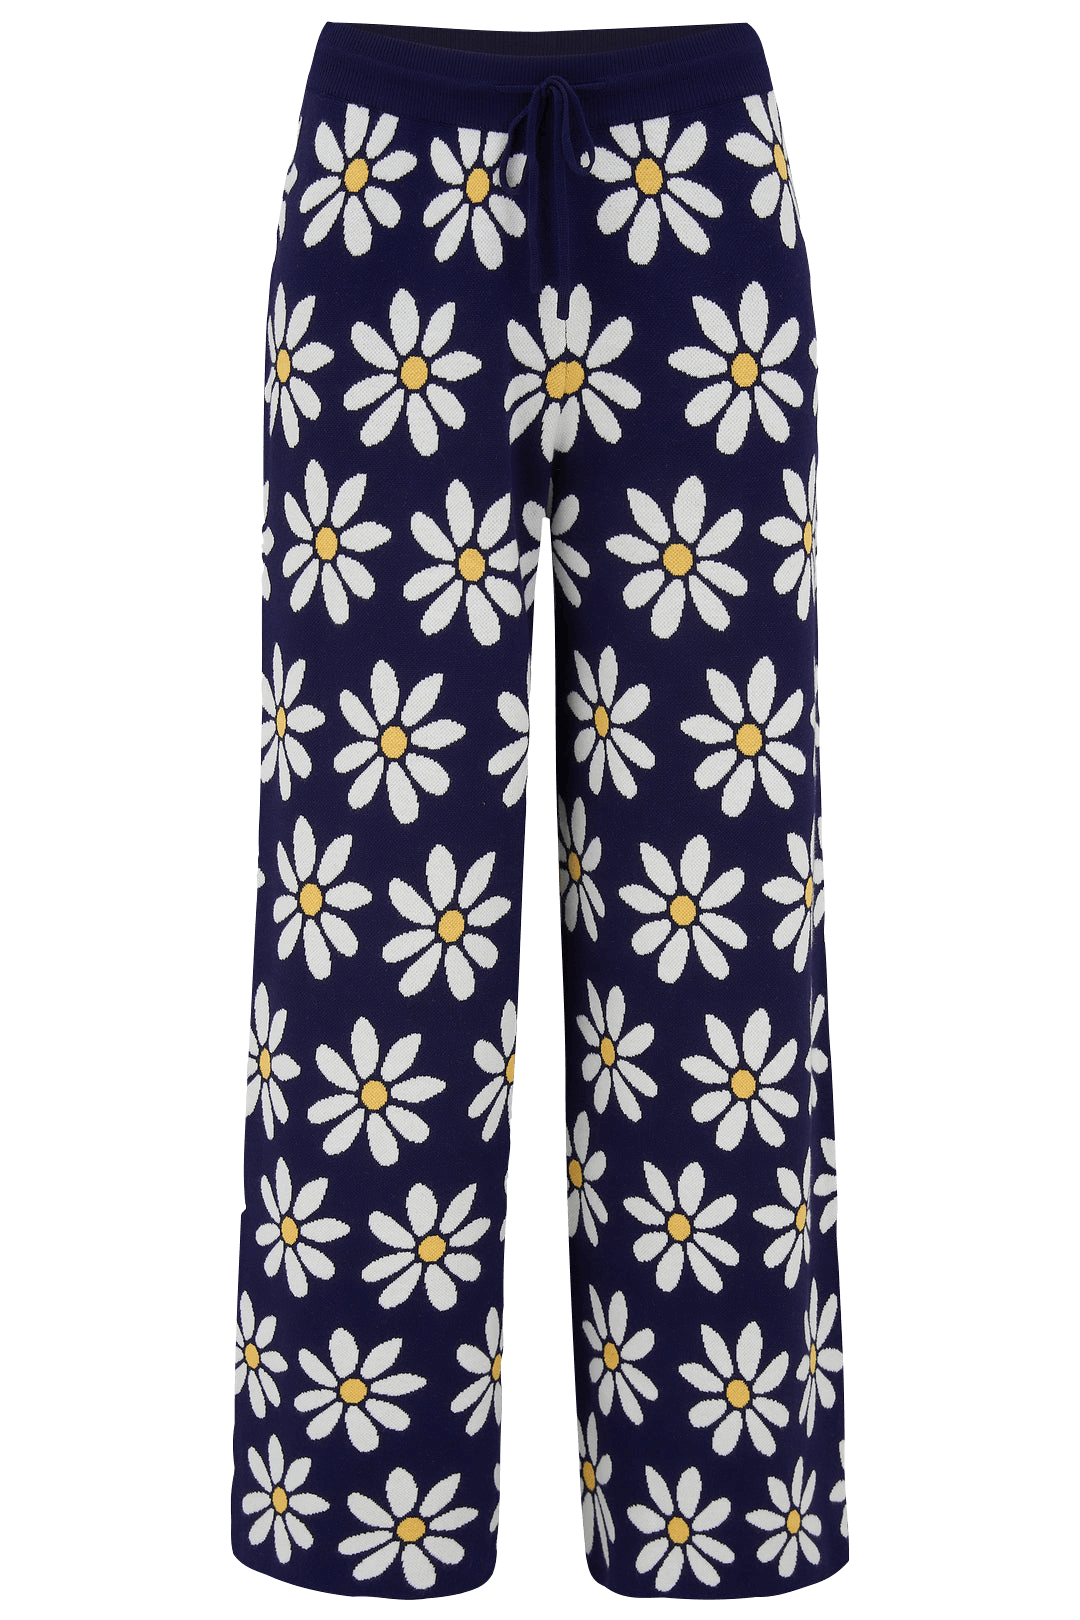 Pantalón Erica de pernera ancha Azul marino, Daisy Repeat - ECRU